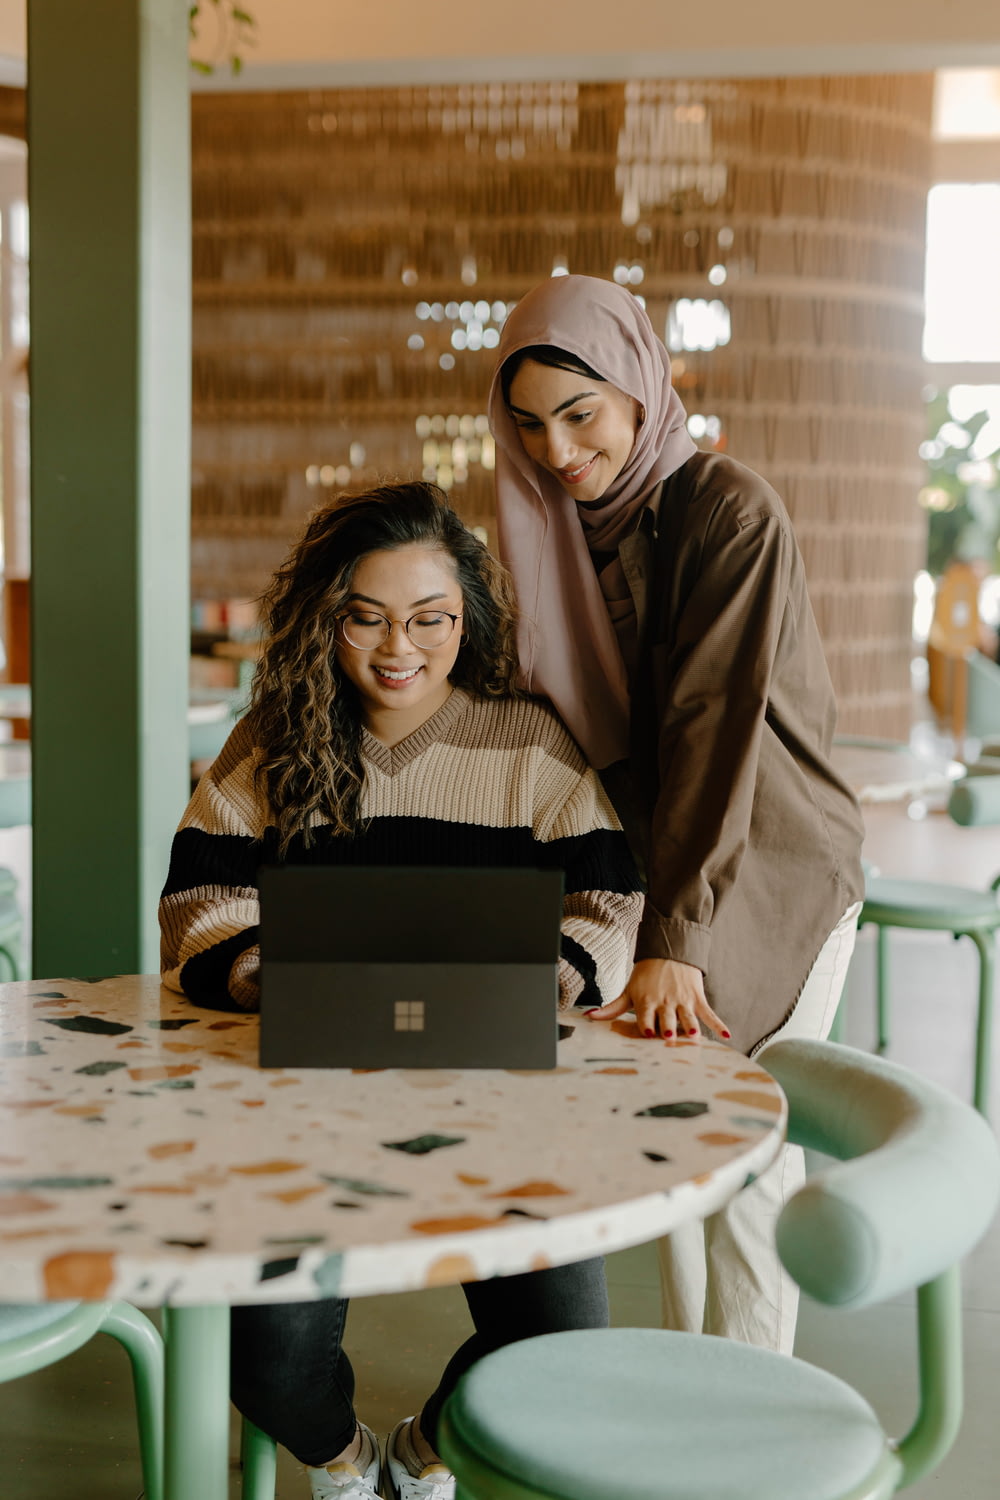 Una donna e una ragazza che guardano un computer portatile